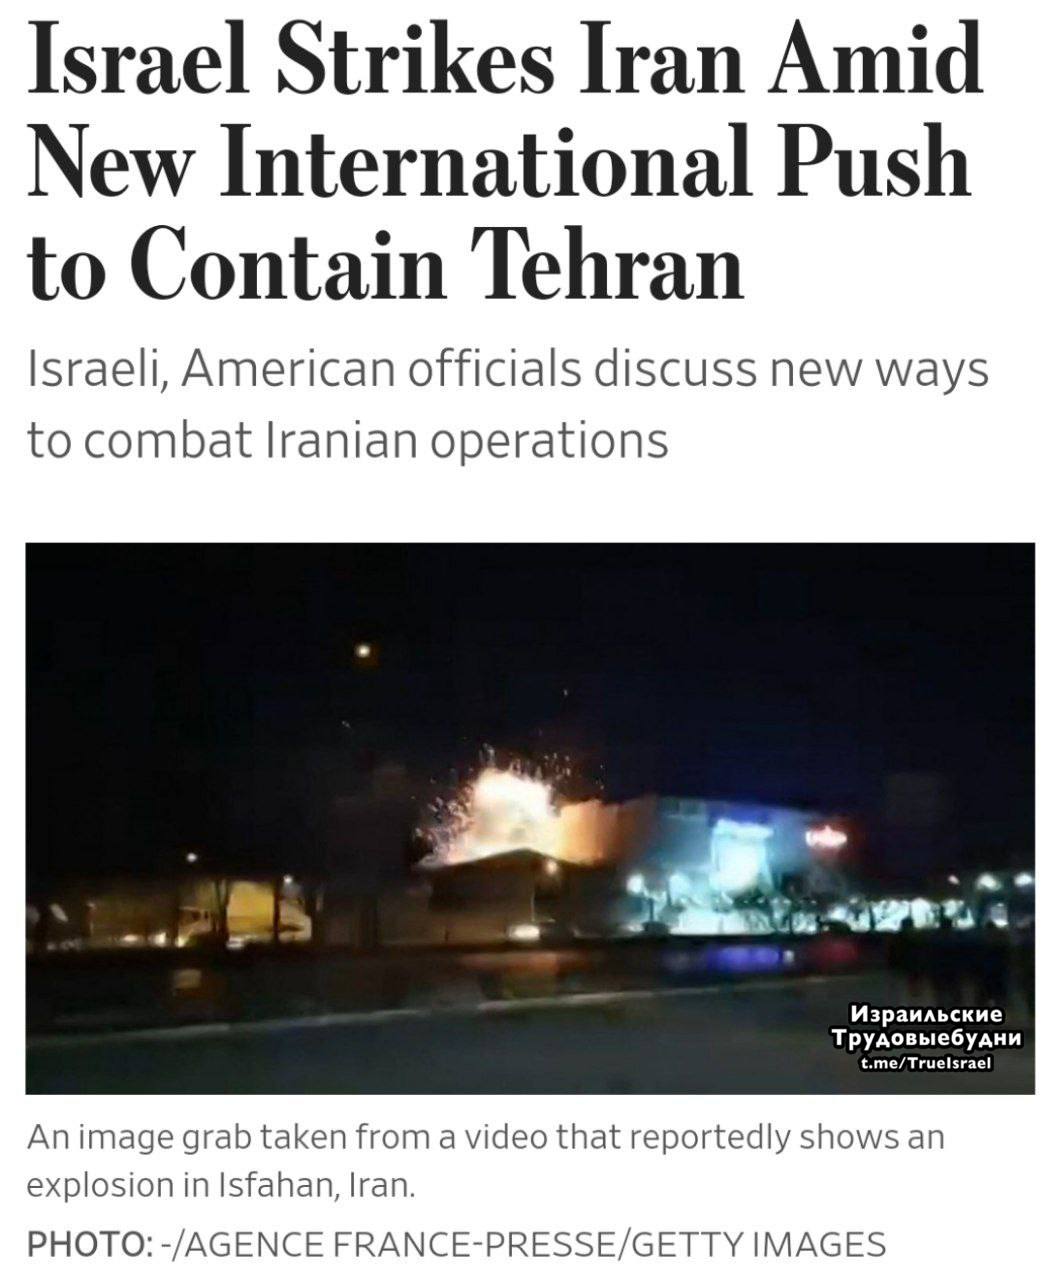 ❗️Израиль стоит за атакой по иранским оборонным заводам, — The Wall Street Journal со ссылкой на представителей администрации Байдена